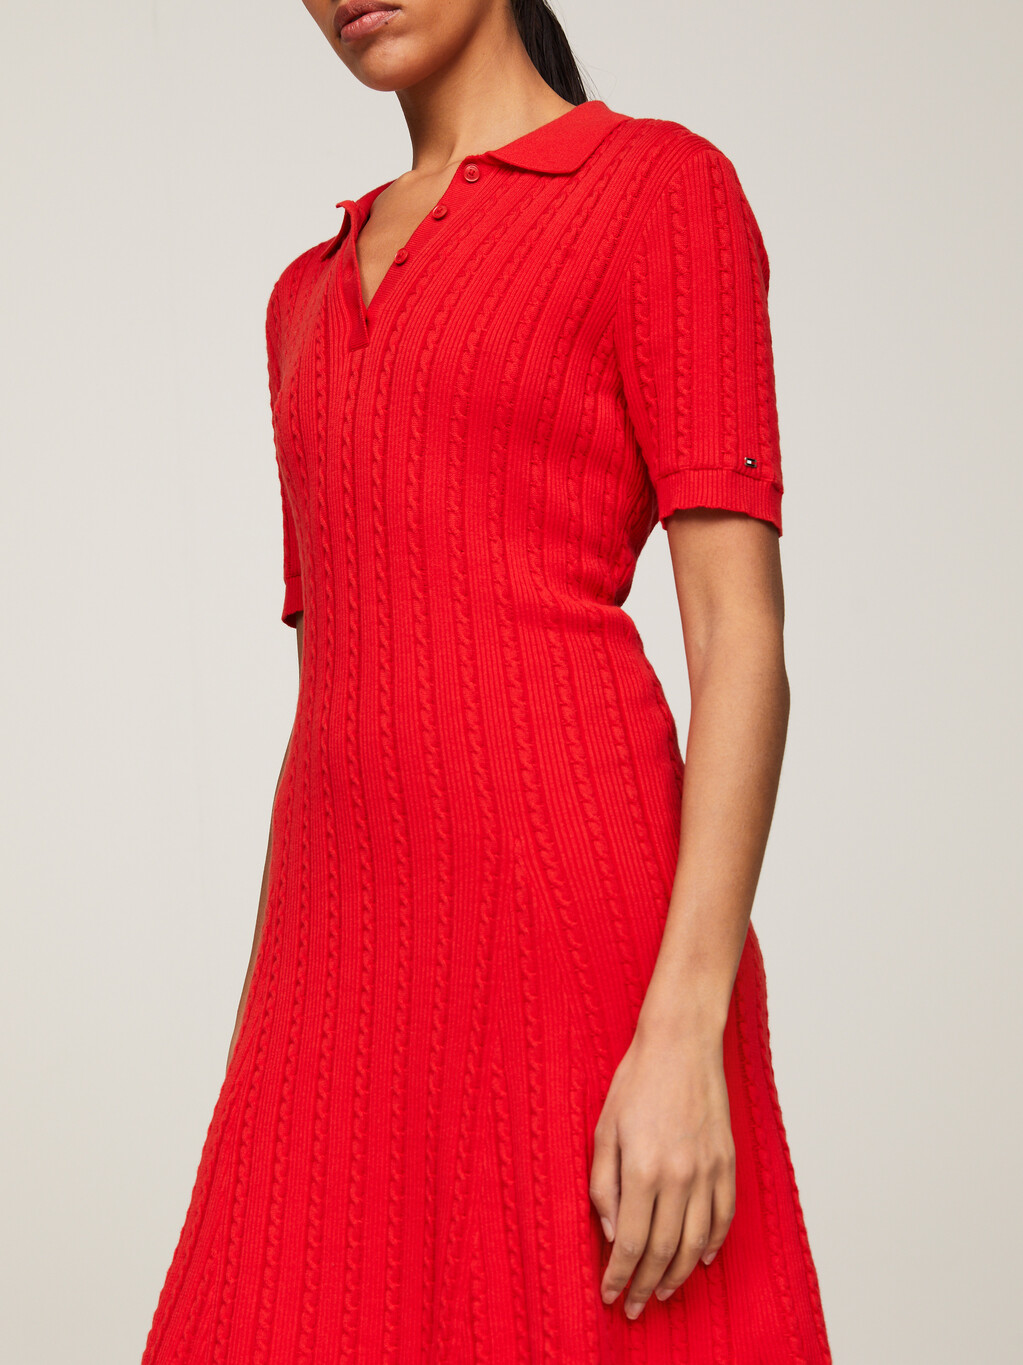 絞花針織及膝 Polo 冷衫連身裙, Fierce Red, hi-res